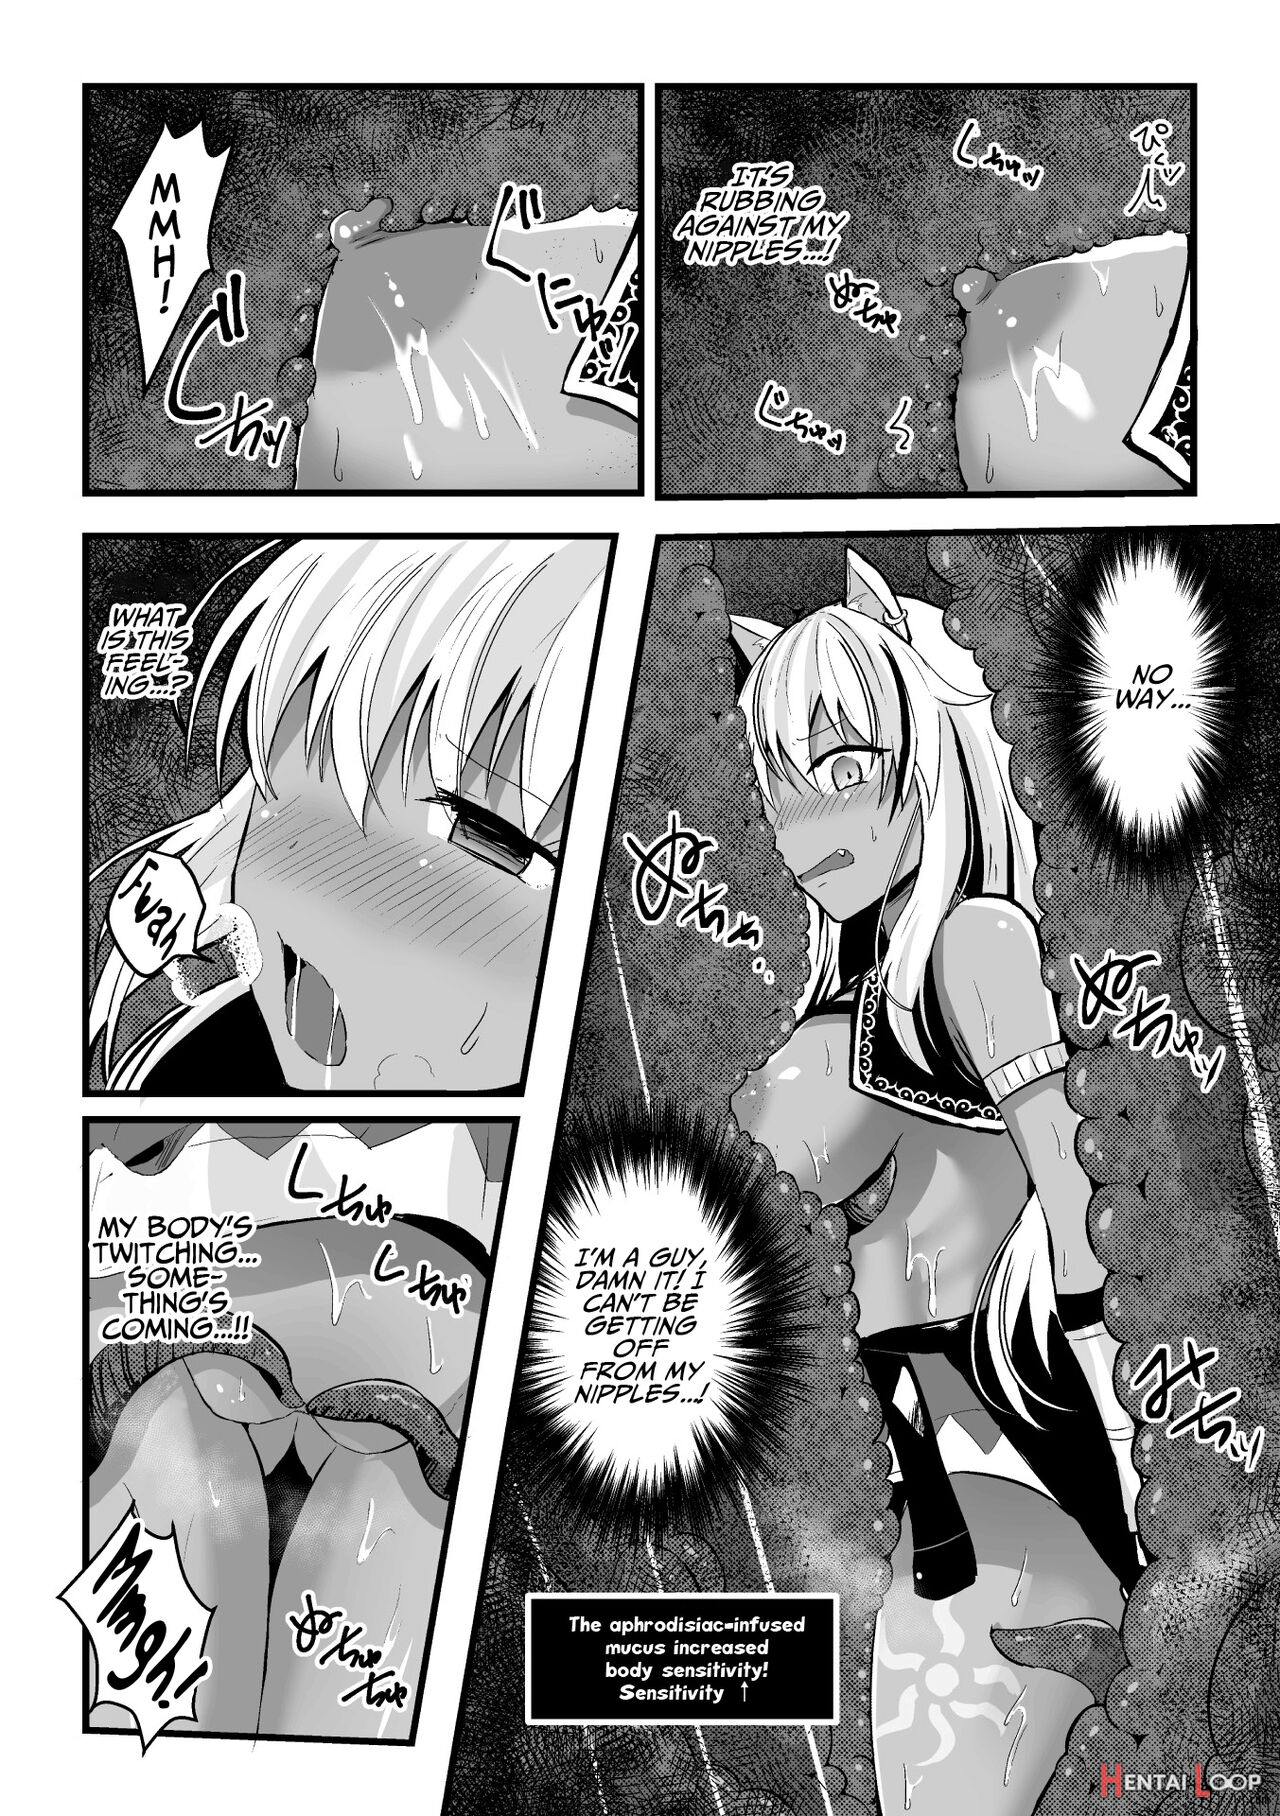 2d Comic Magazine Mesu Ochi! Ts Ero Trap Dungeon Vol. 2 page 52